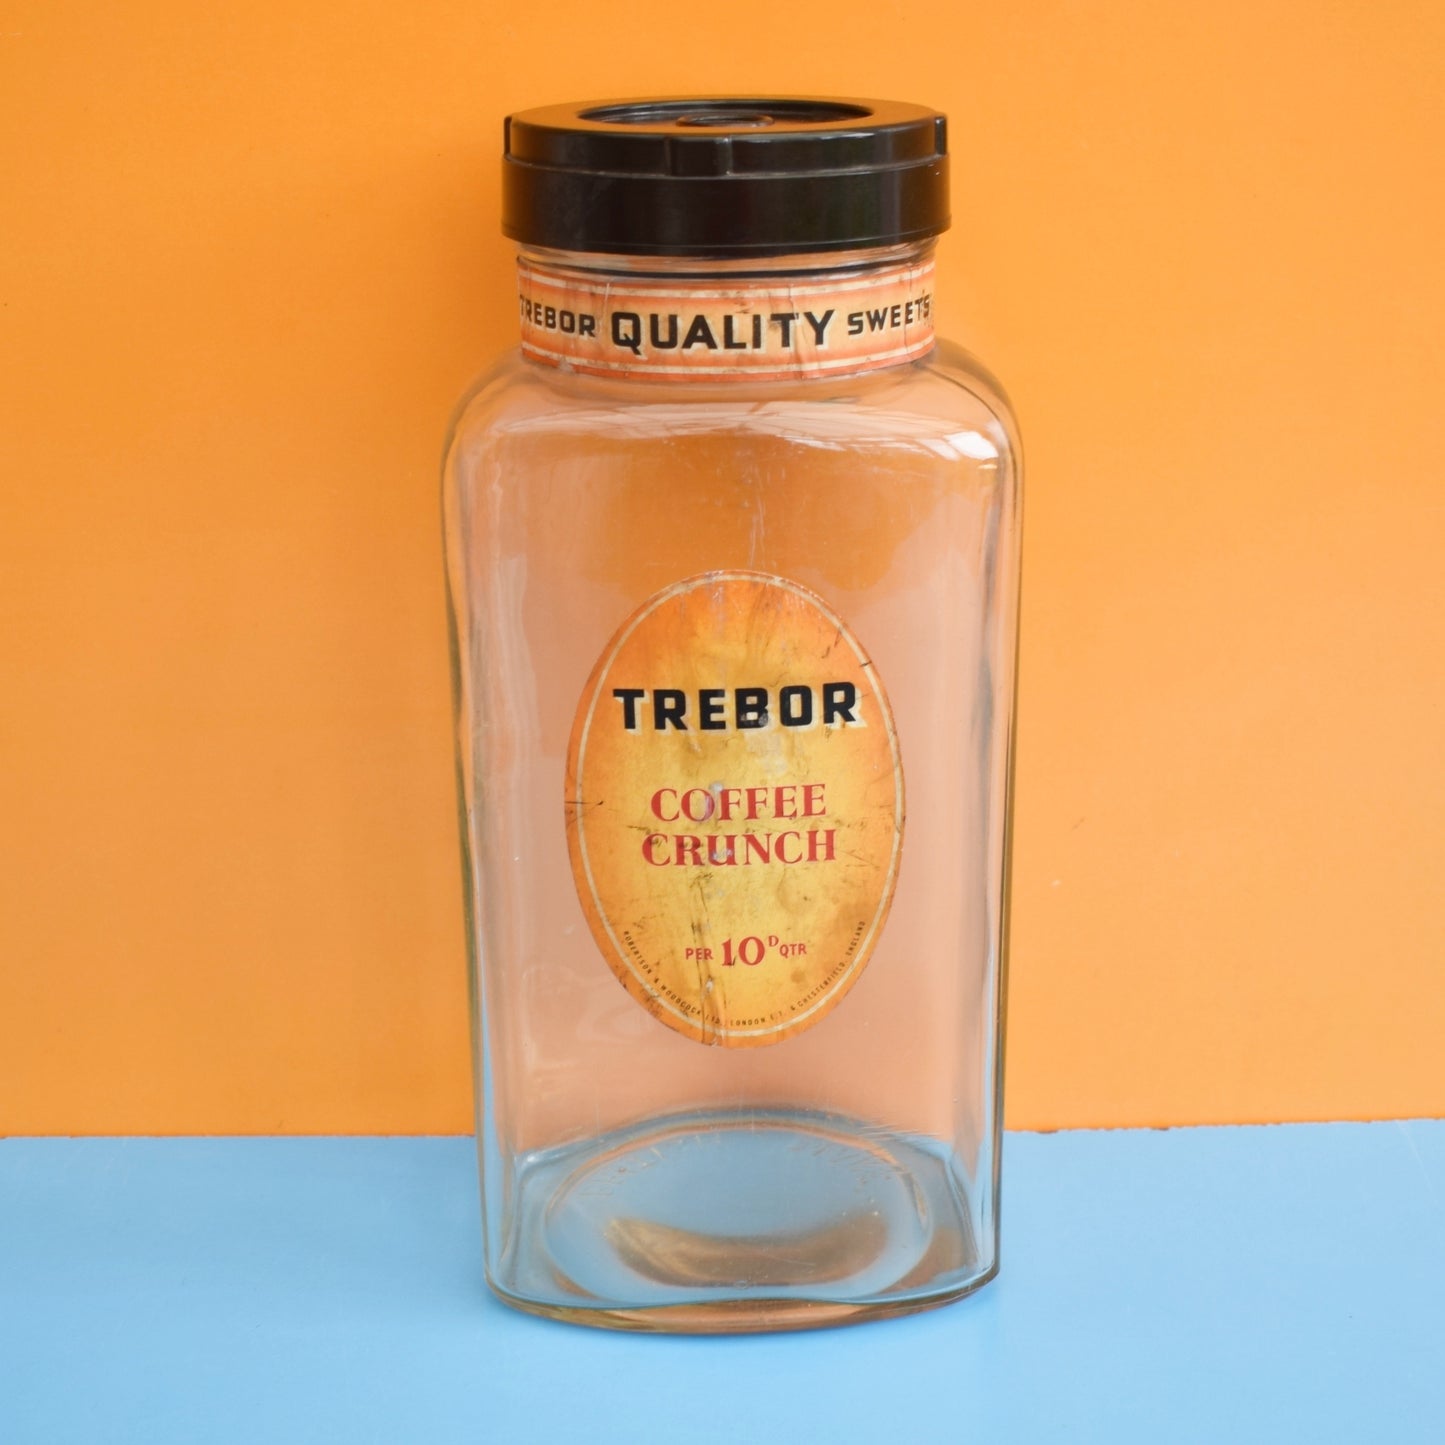 Vintage 1960s Glass Sweet Shop Jar - Trebor